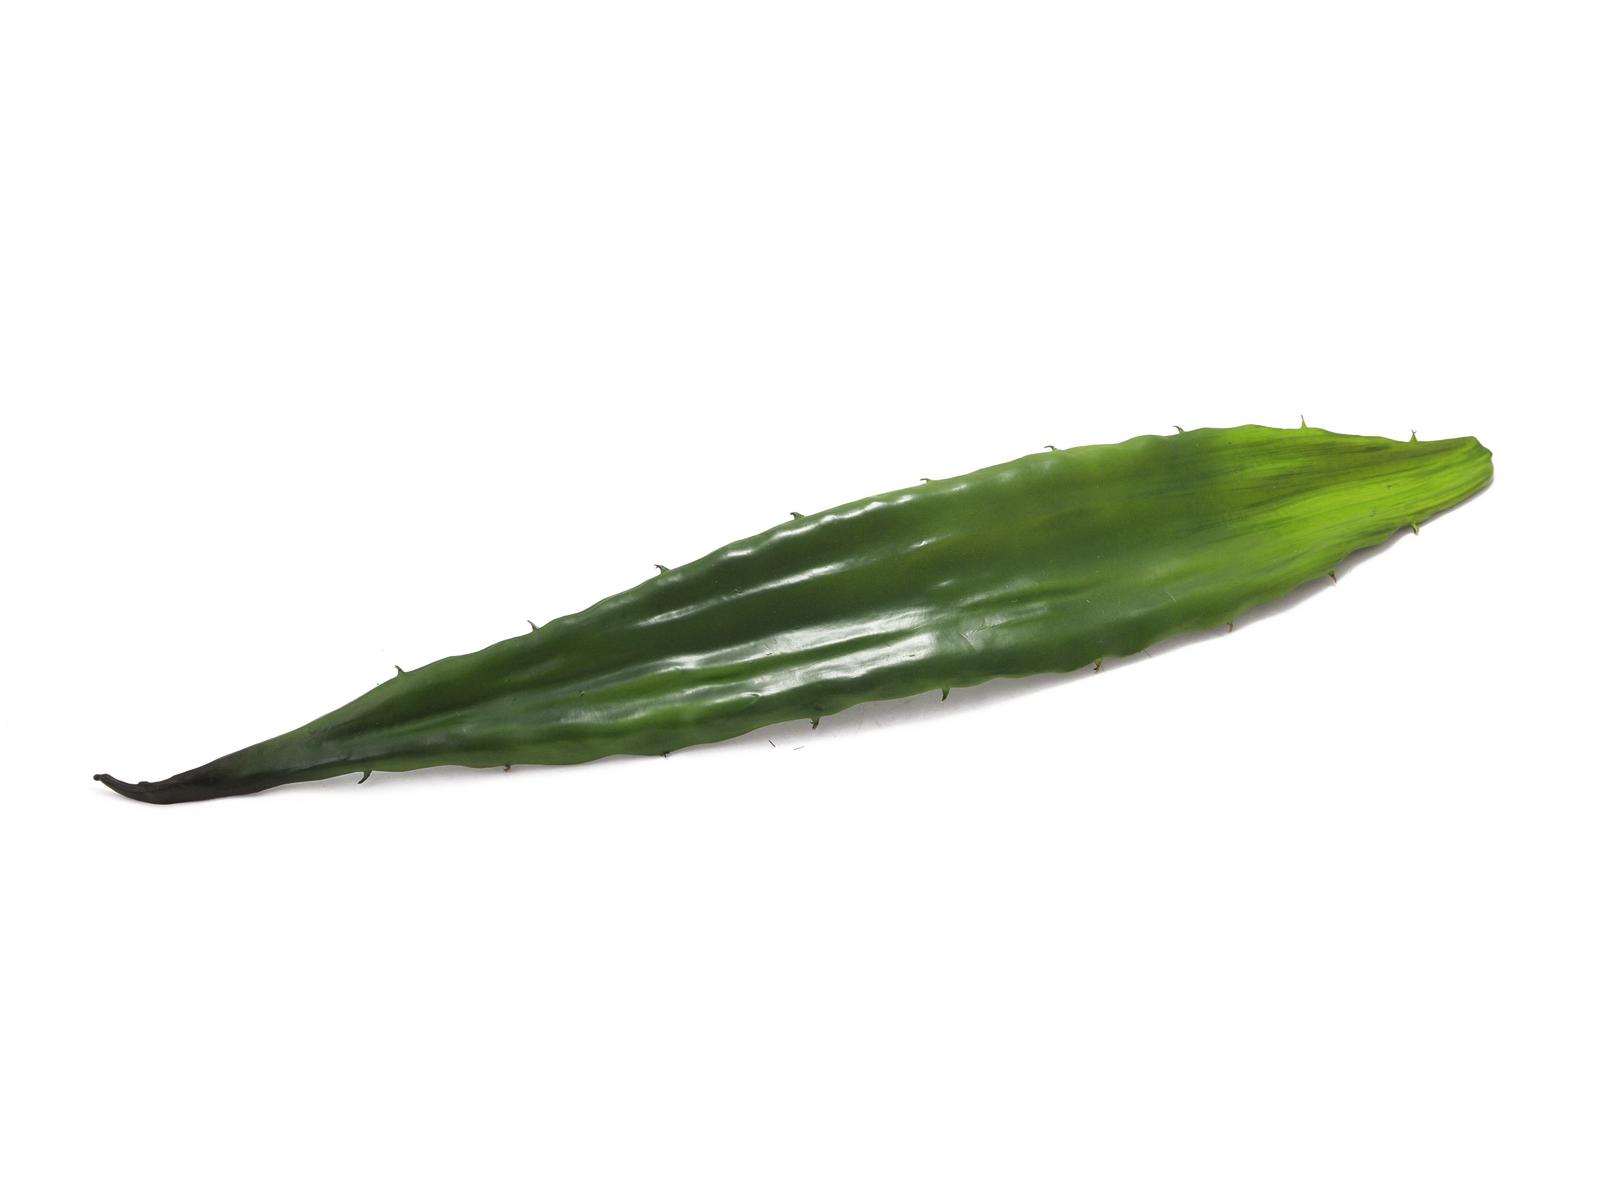 Aloe list zelený, 60 cm